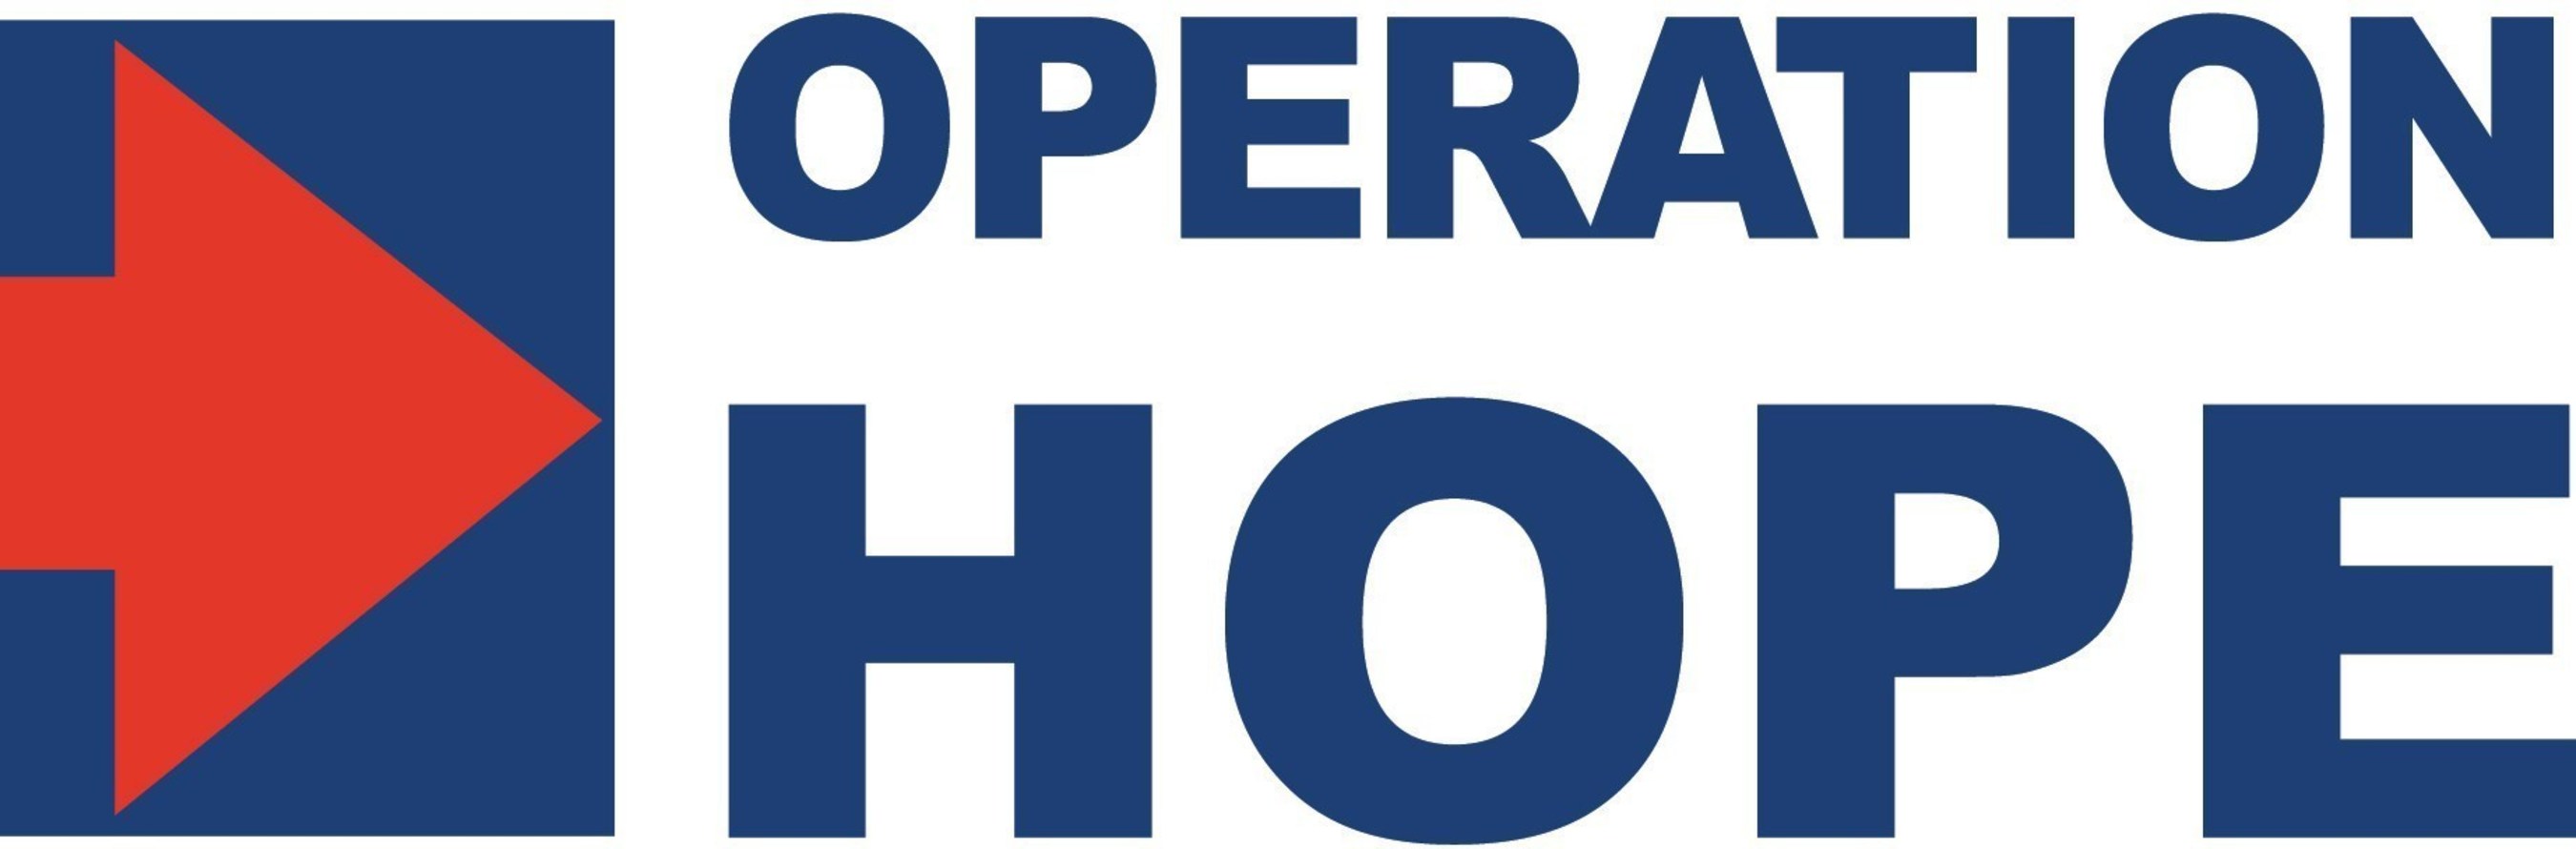 Operation Hope logo